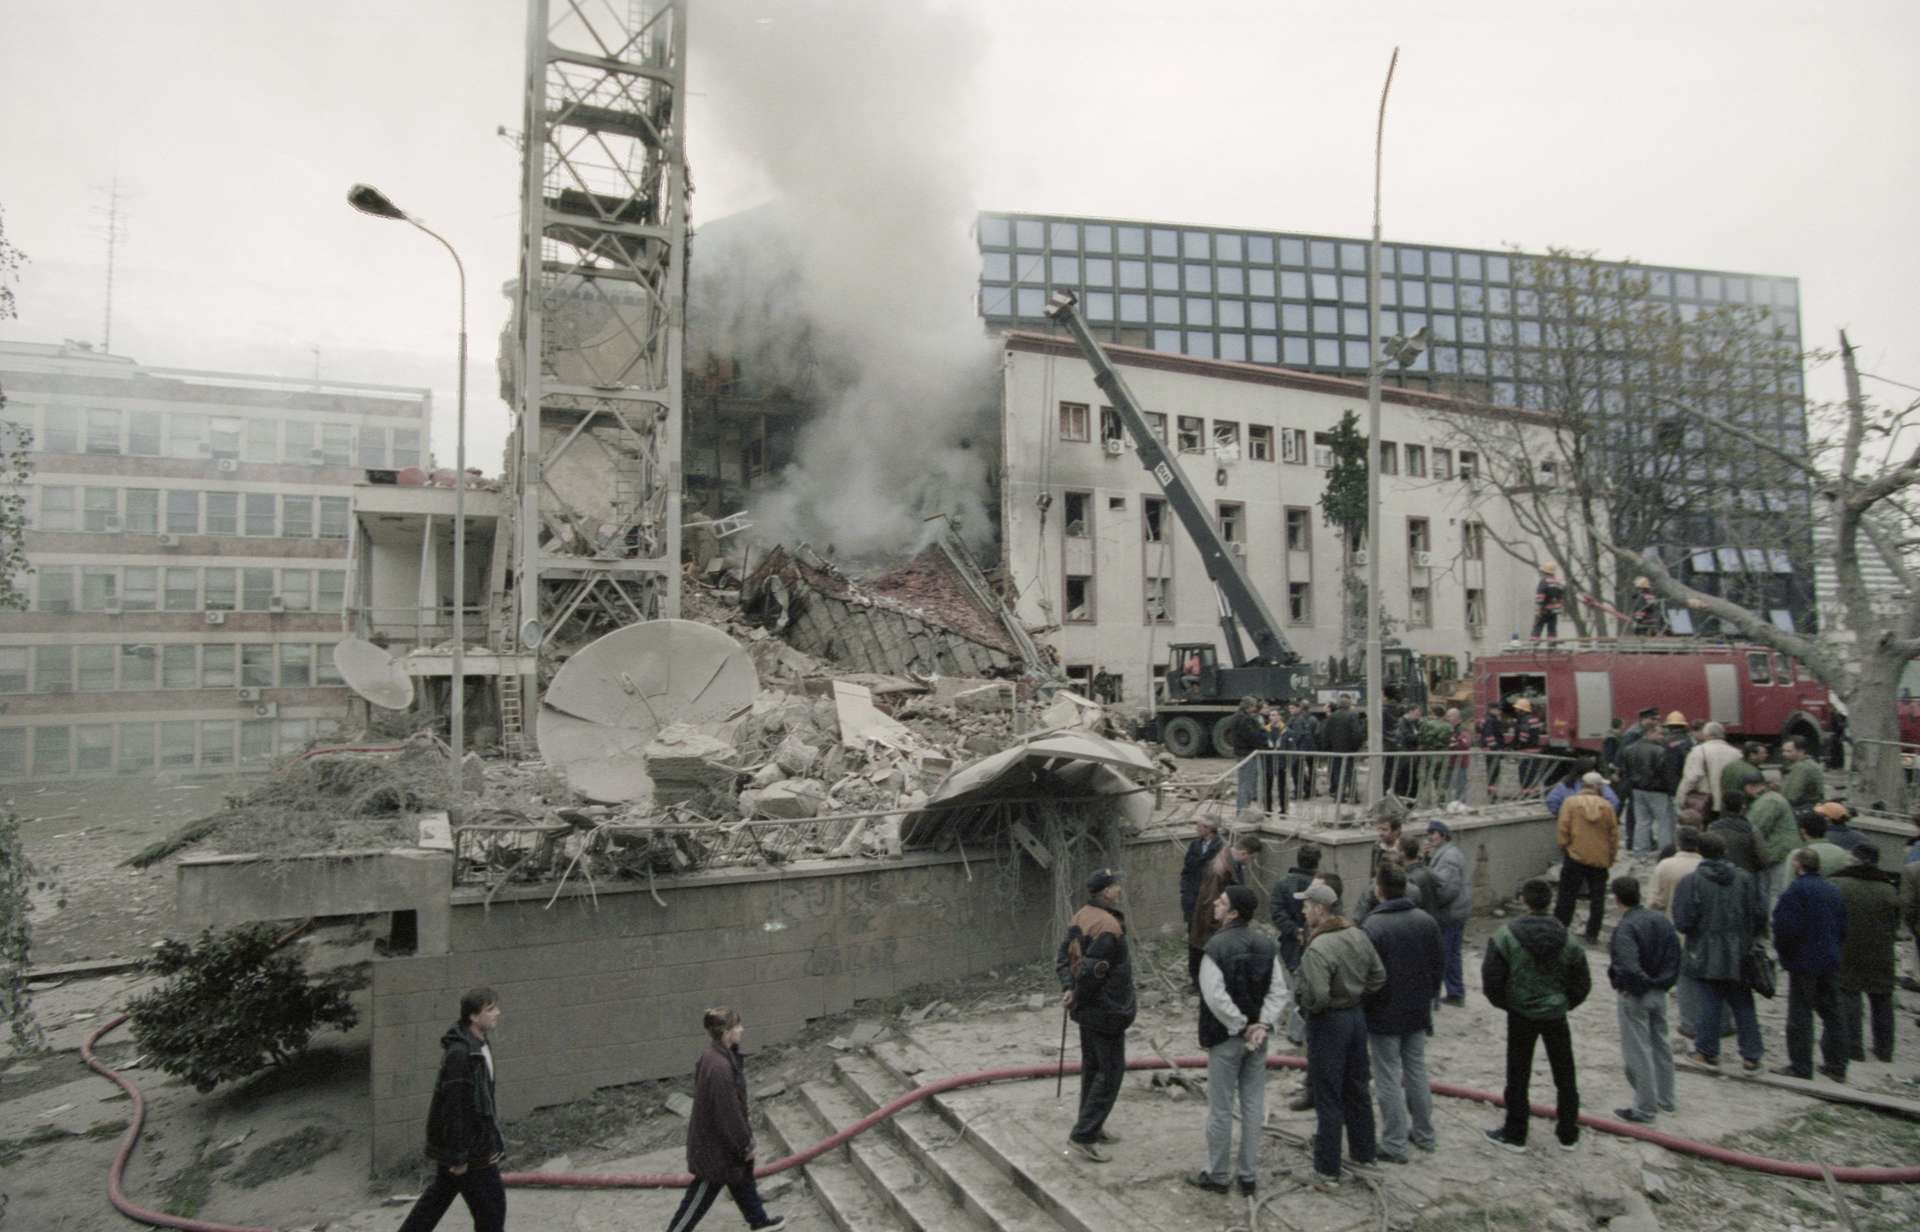 Сербия 1999 год. Белград 1999 год. Сербия после бомбардировок 1999. Бомбардировки Сербии в 1999 году.